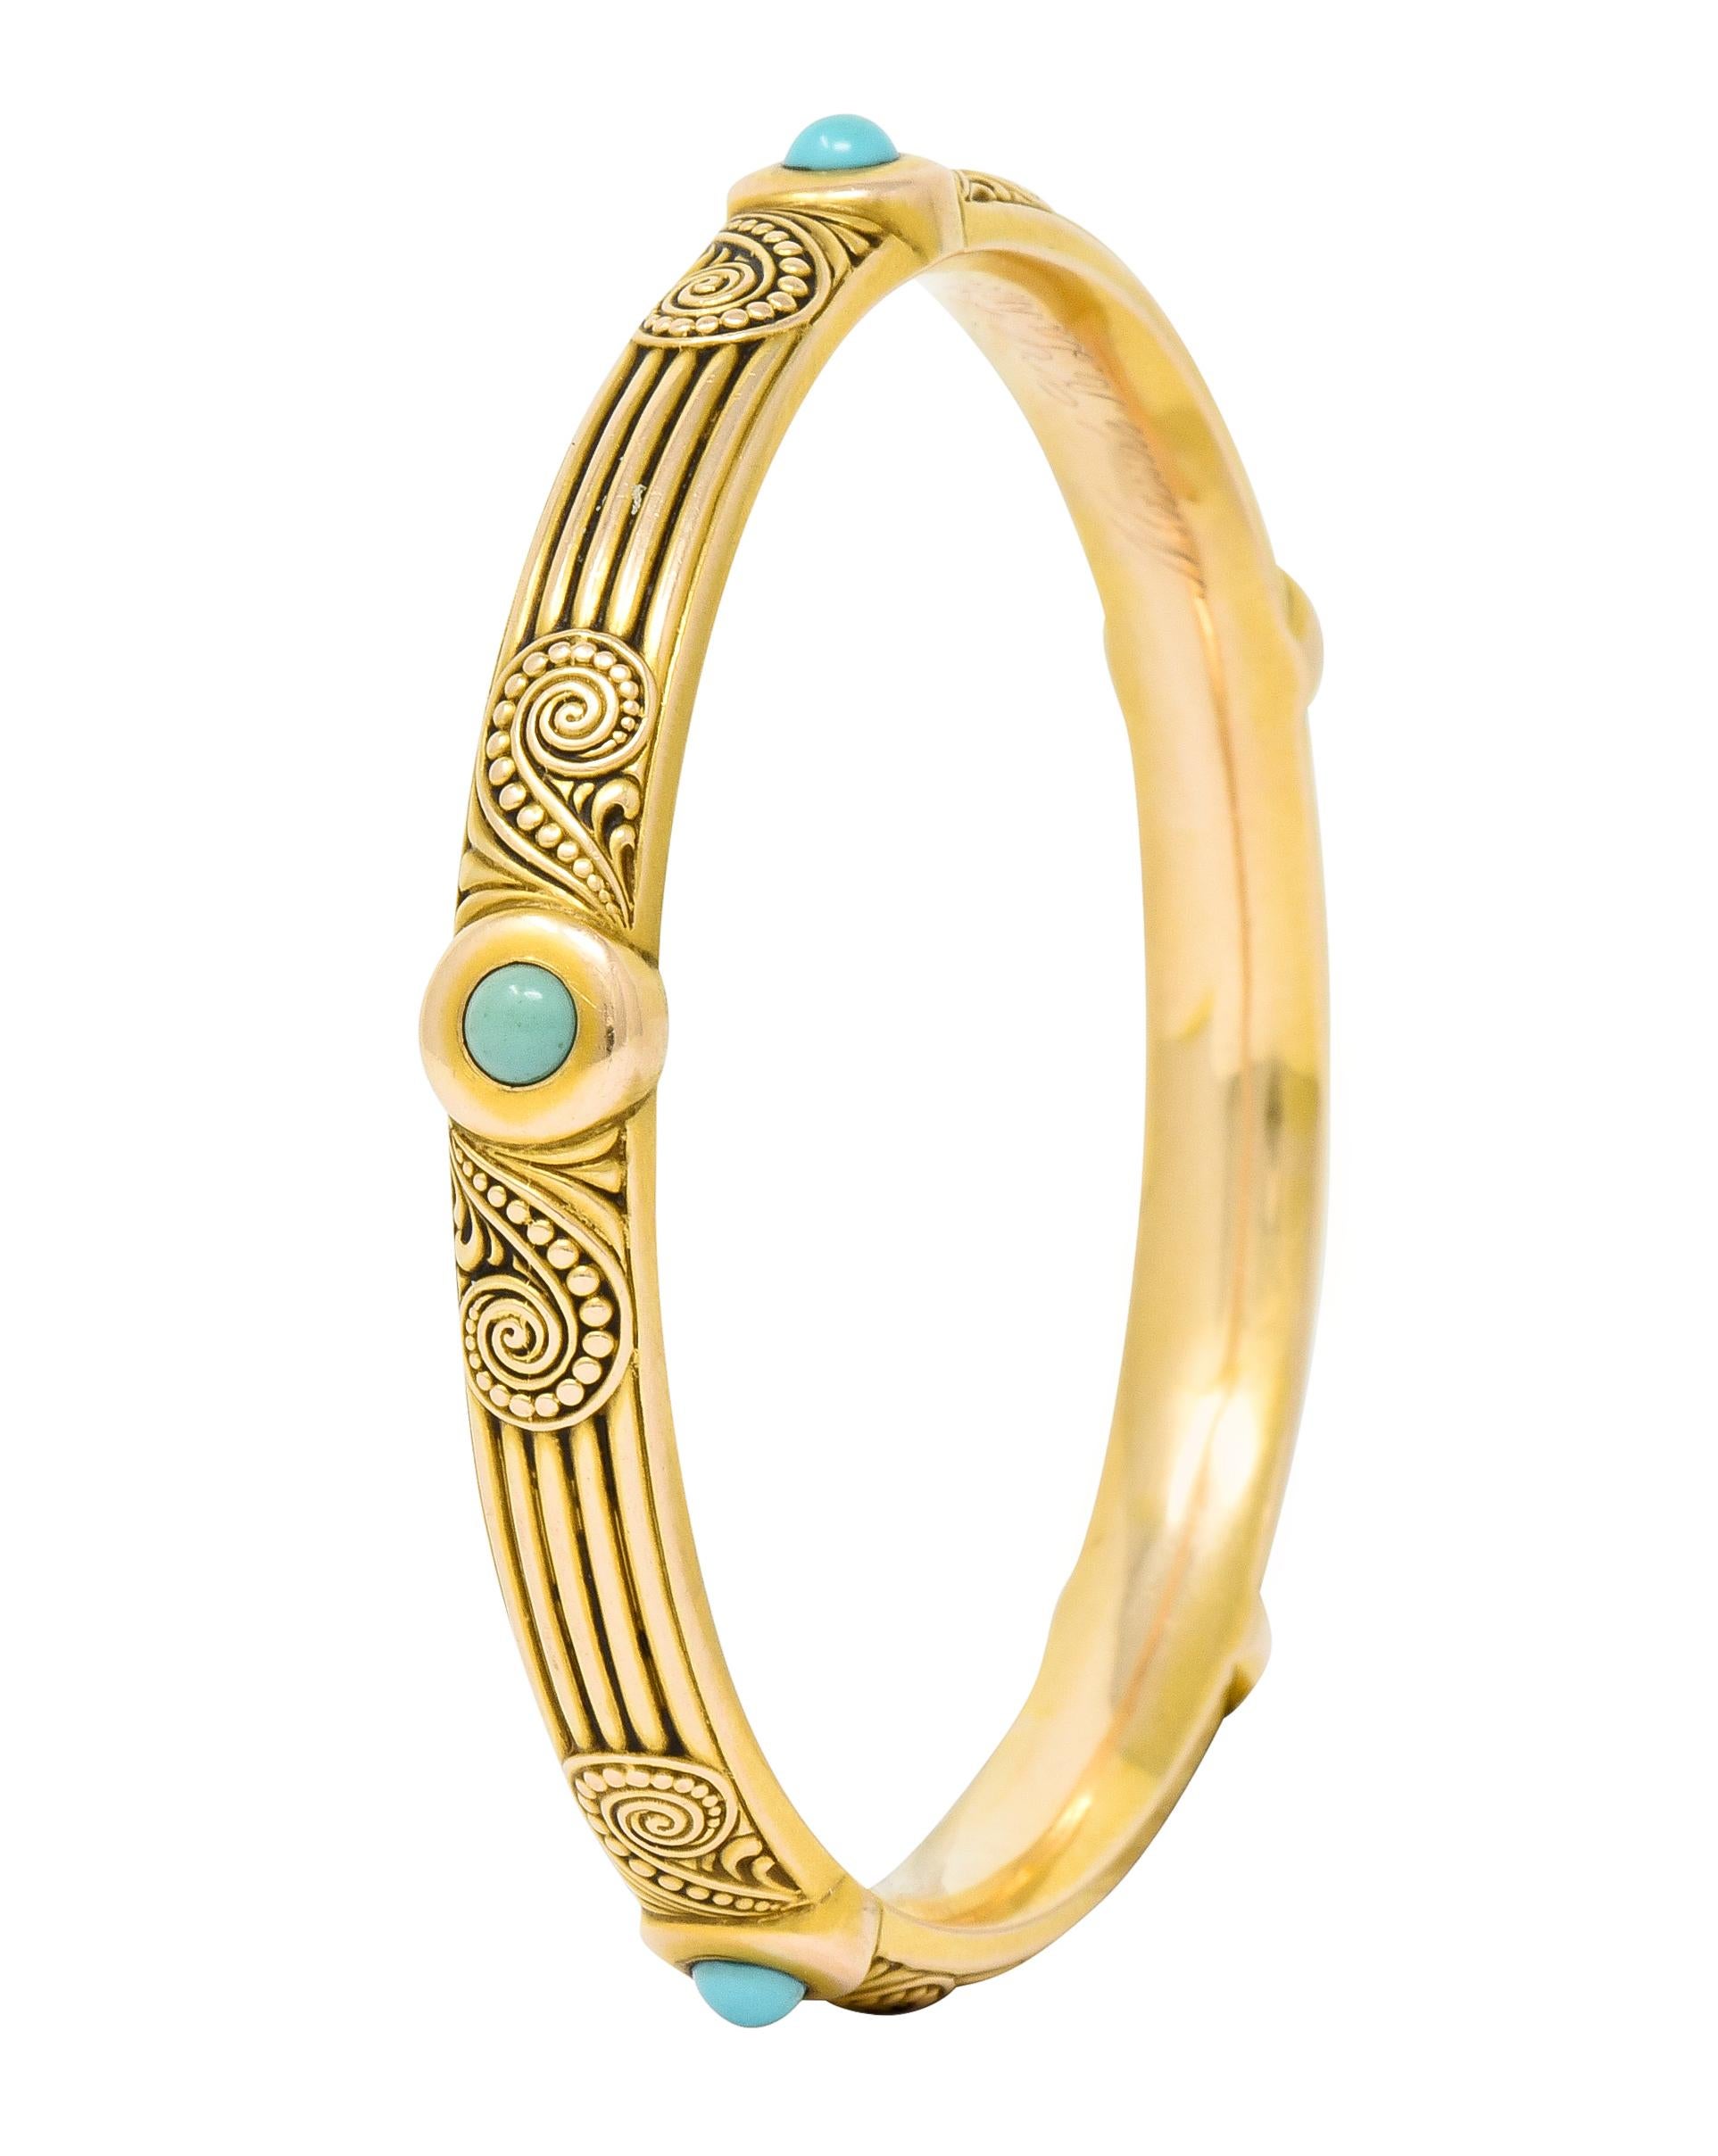 Riker Brothers Art Nouveau Turquoise Cabochon 14 Karat Gold Bangle Bracelet 3